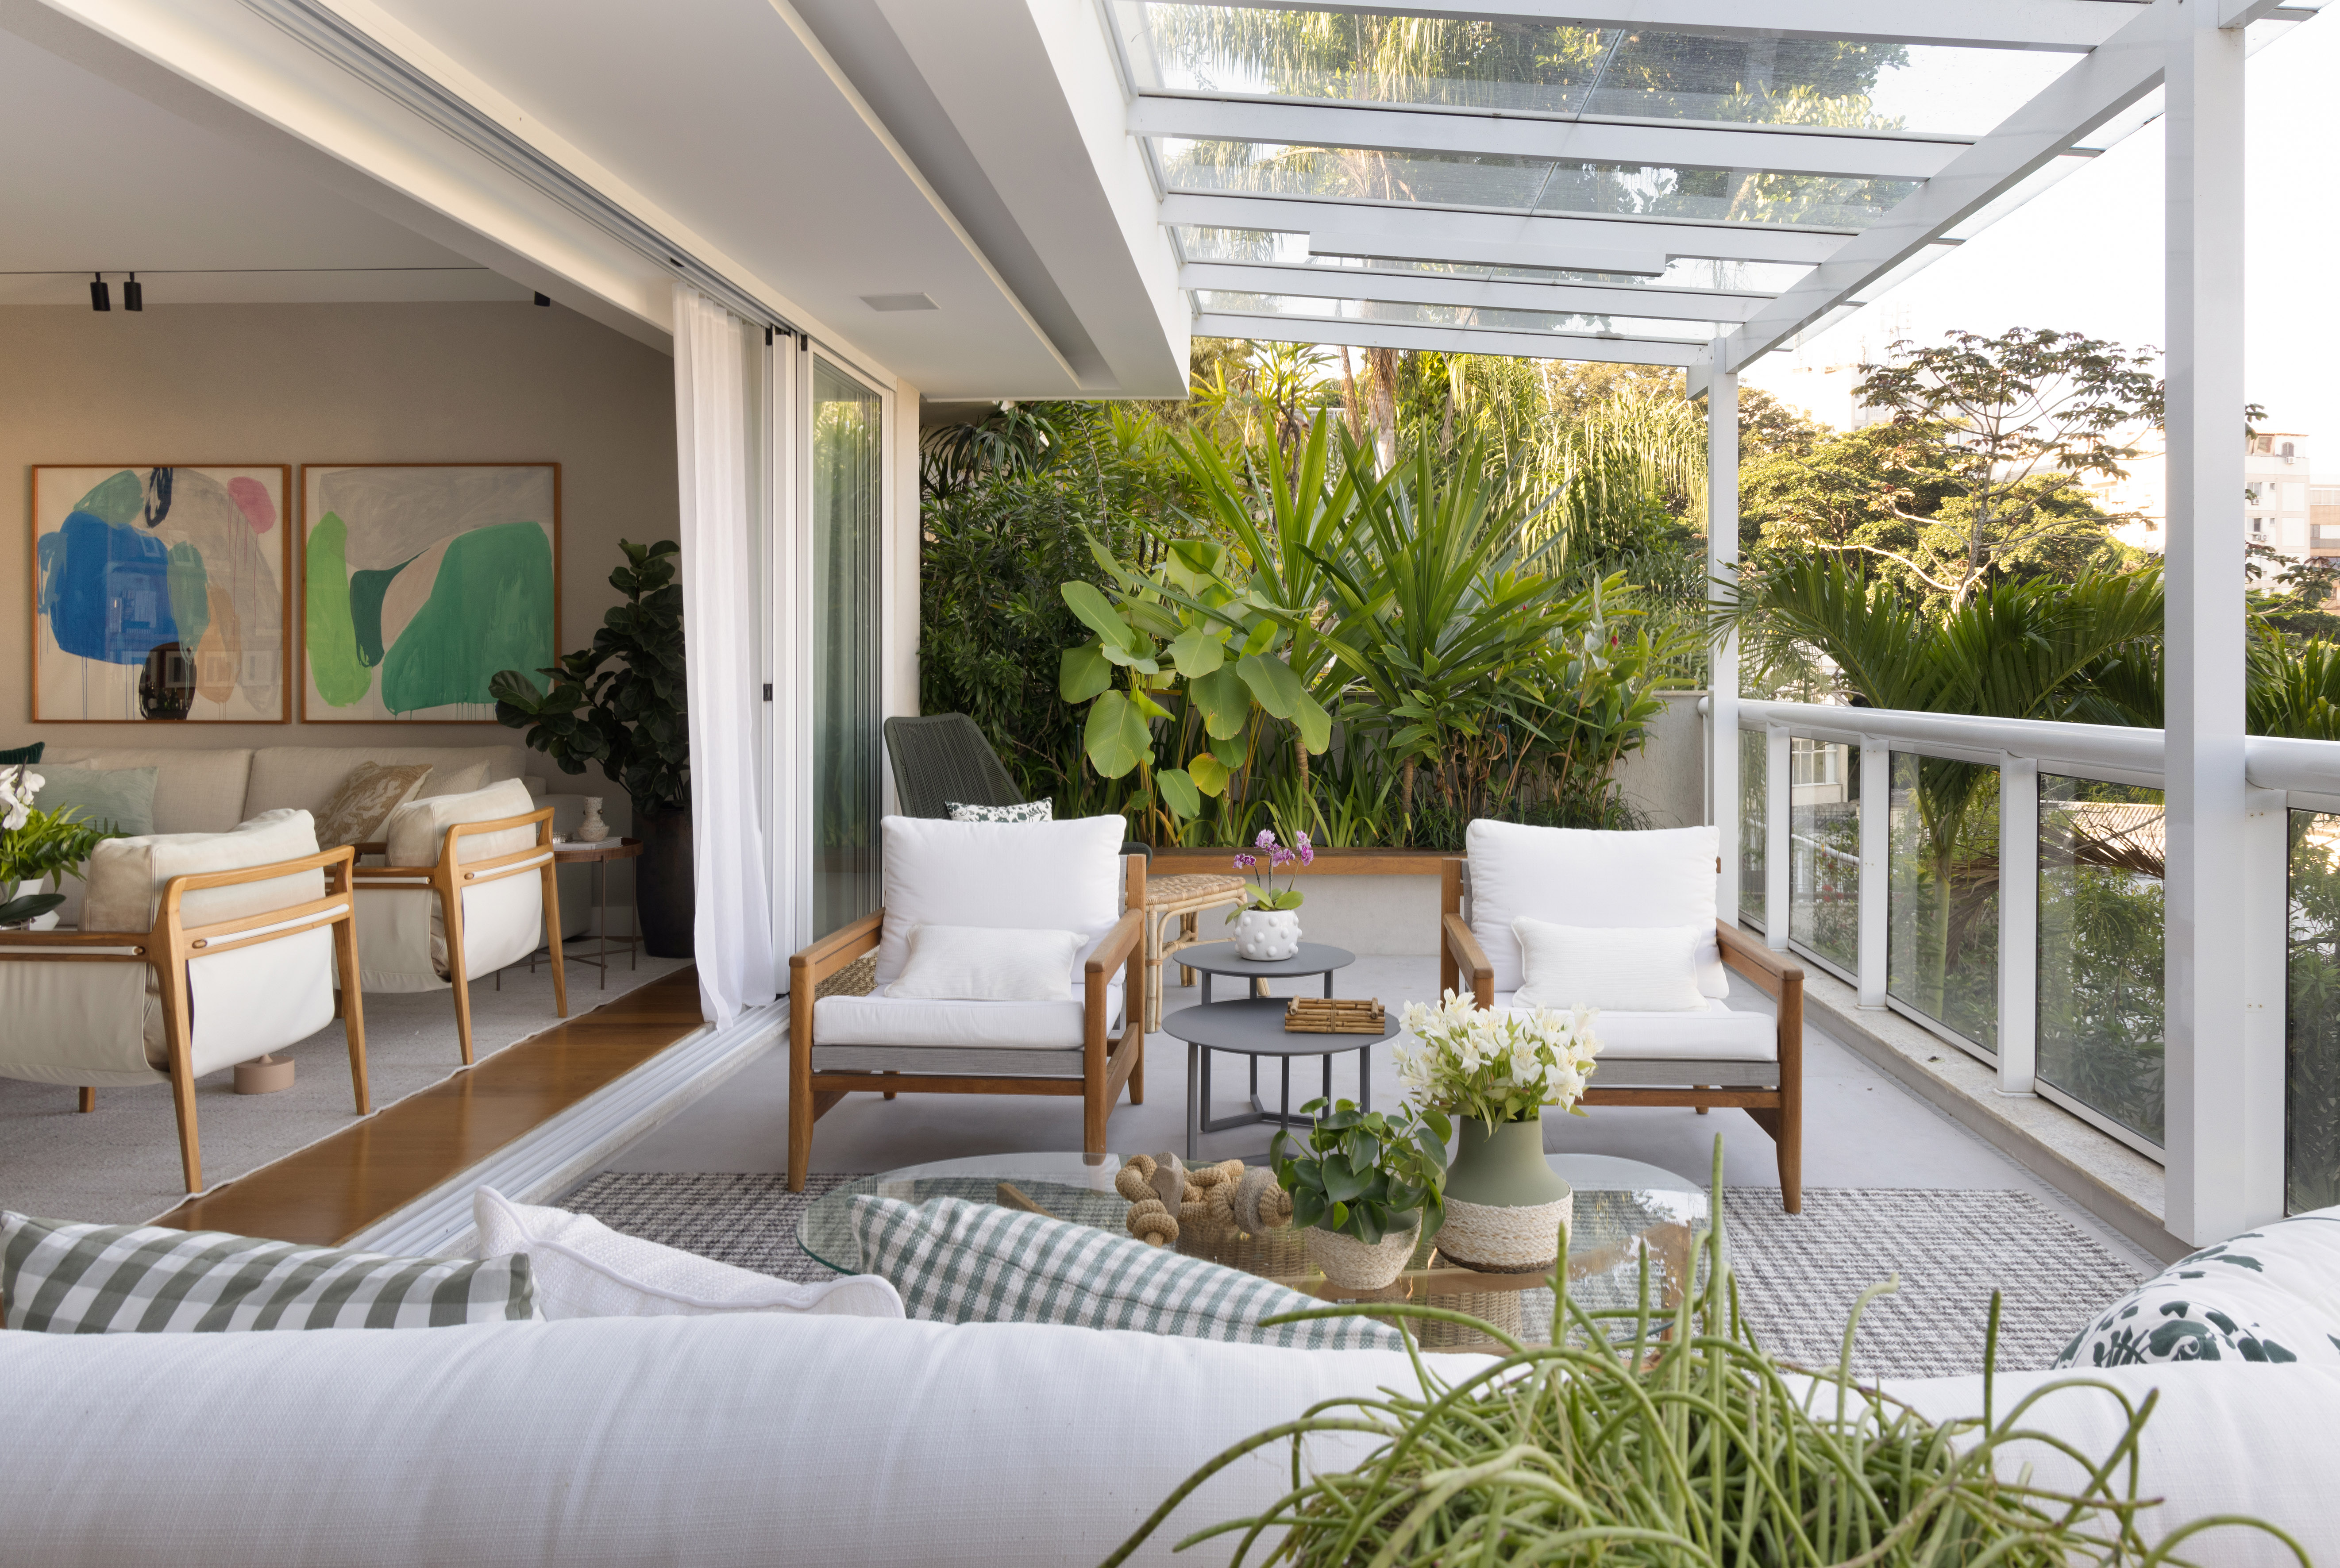 Projeto de Escala Arquitetura. Na foto, varanda com jardim integrado, sofá branco e poltronas brancas.